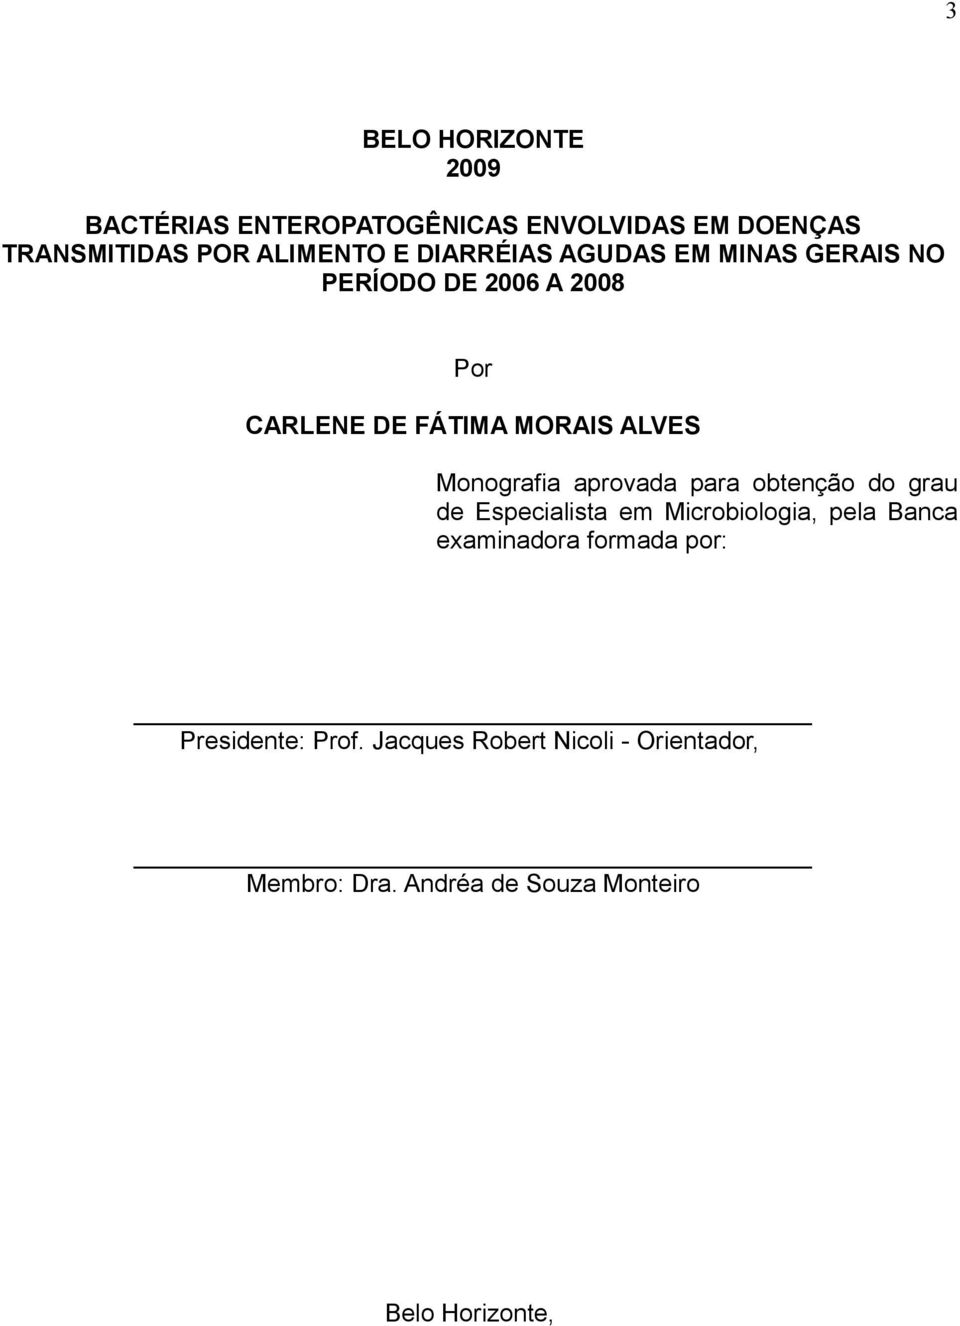 Monografia aprovada para obtenção do grau de Especialista em Microbiologia, pela Banca examinadora